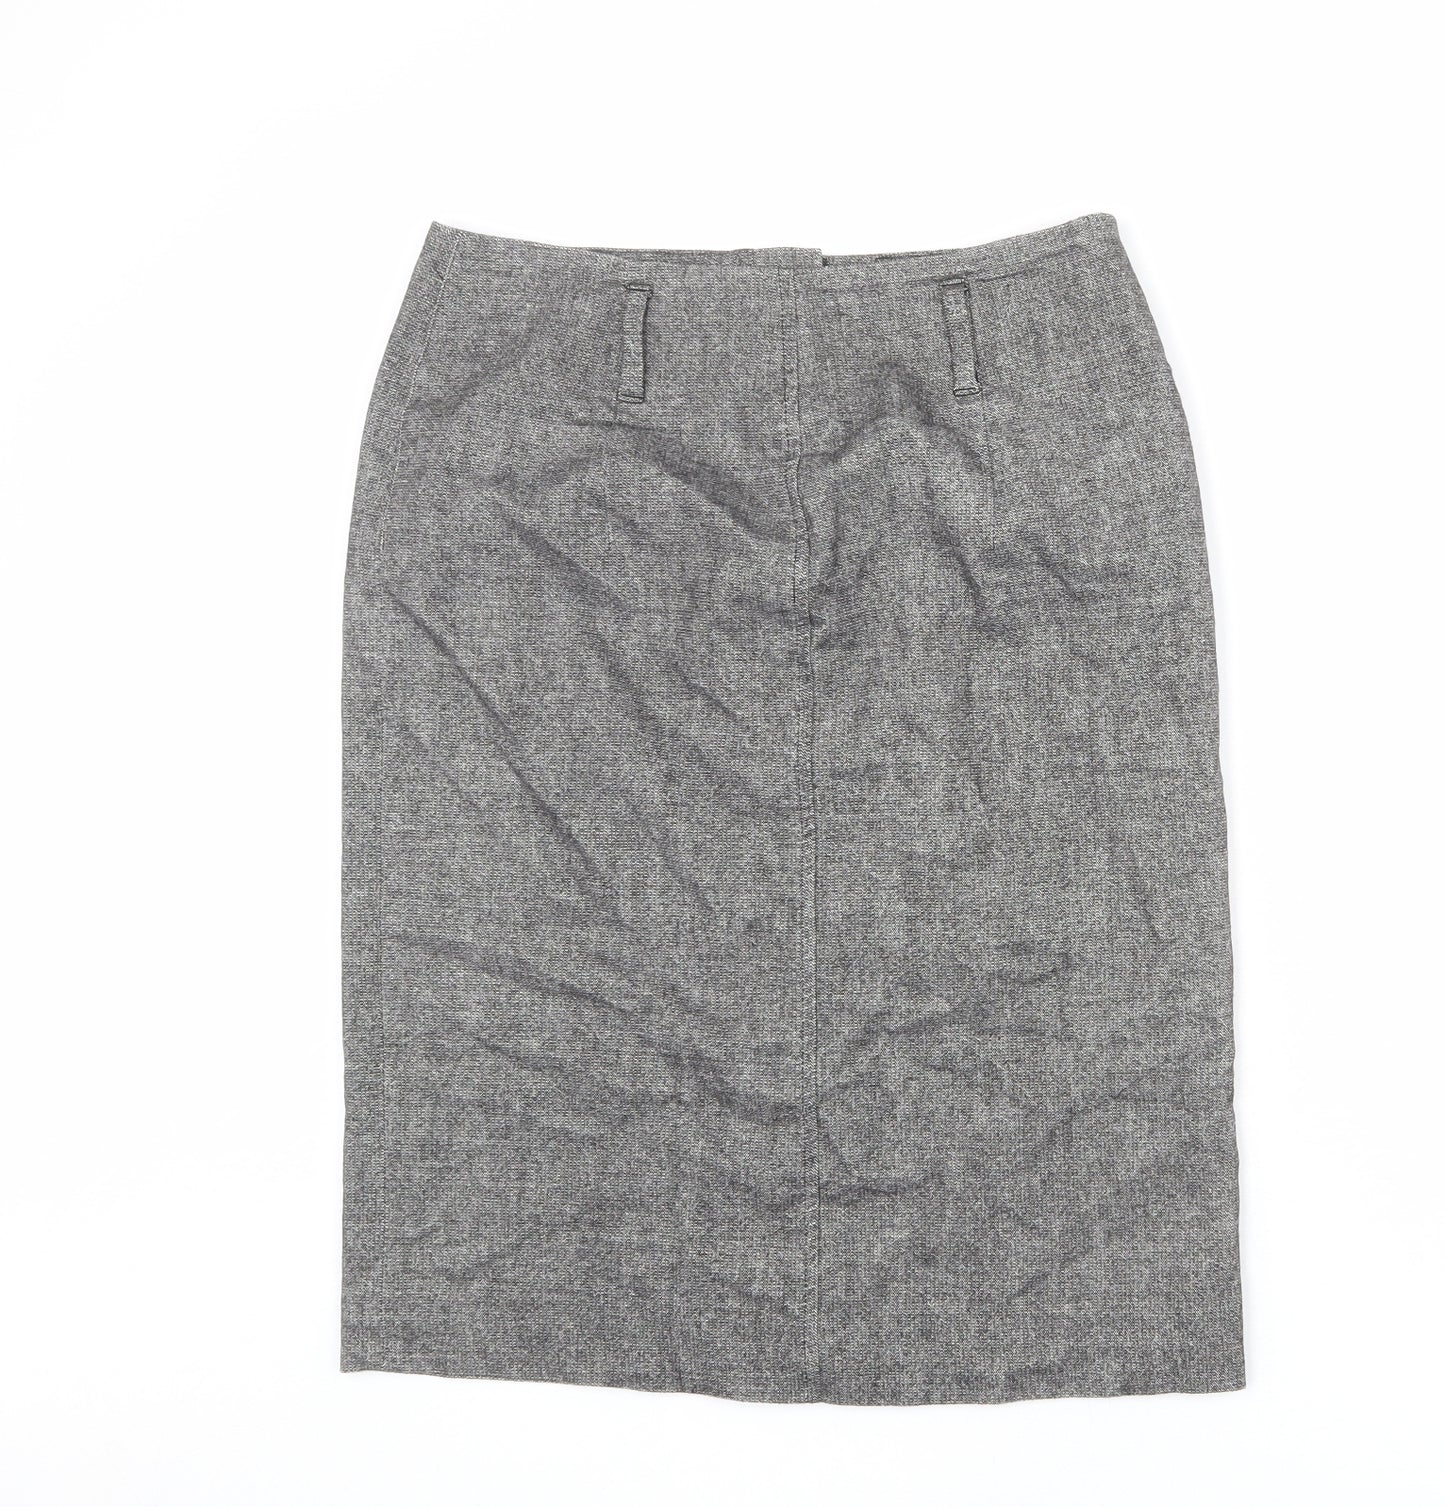 Minuet Womens Grey Polyester A-Line Skirt Size 12 Zip